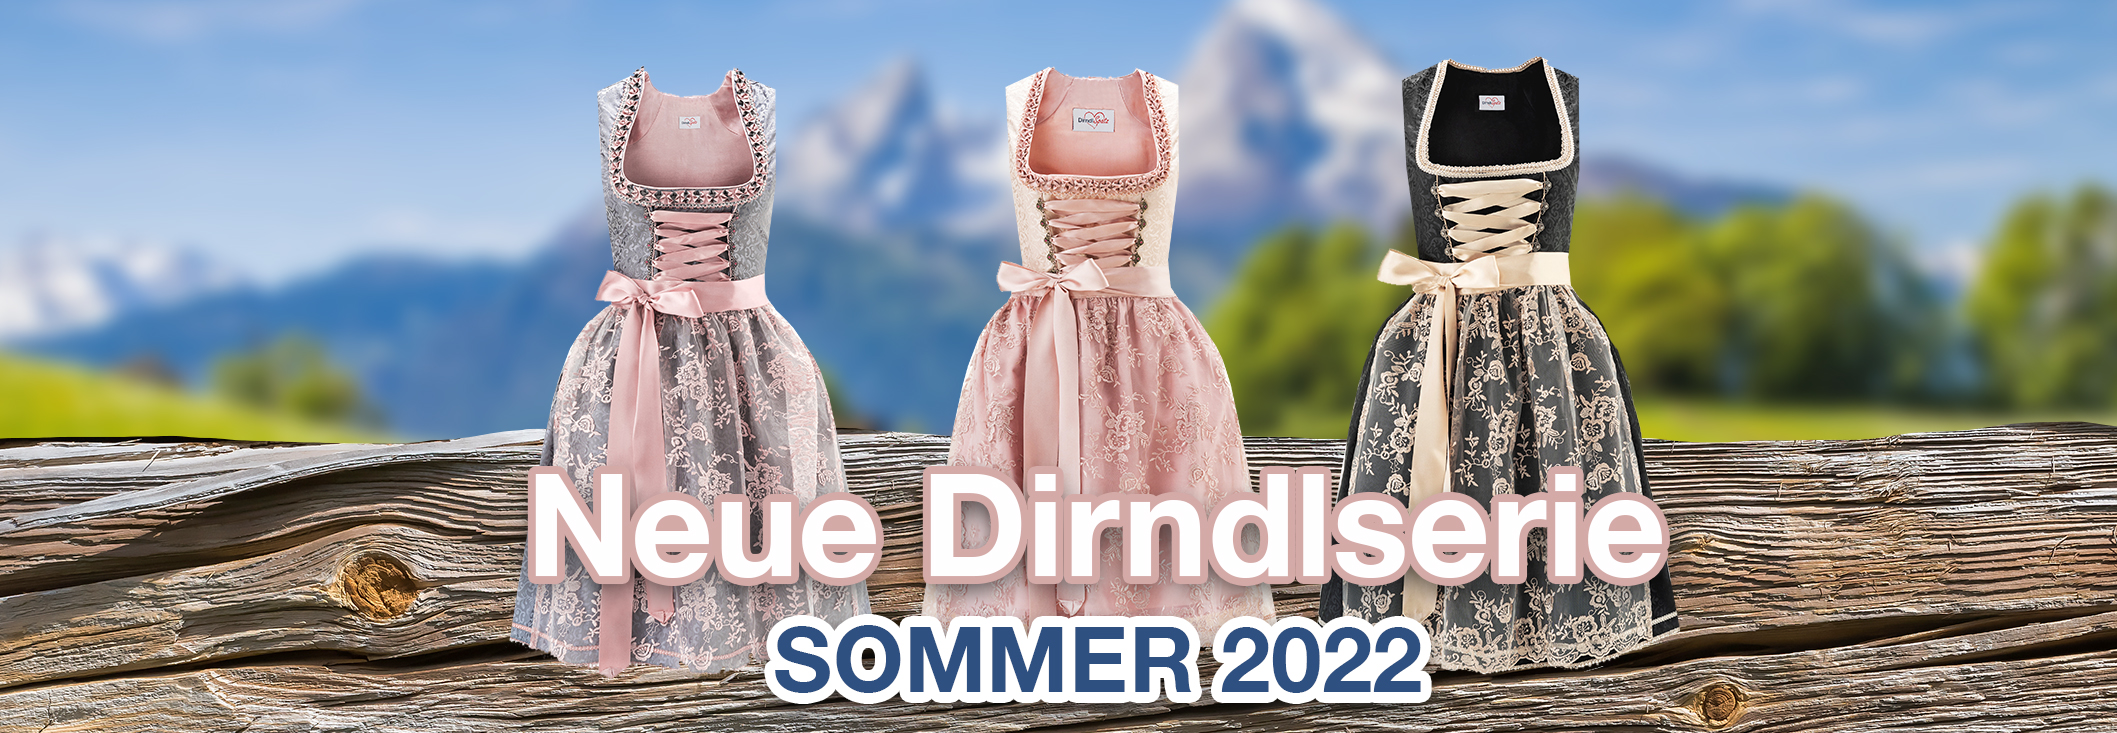 Neue Dirndlspatz Kollektion Sommer 2022